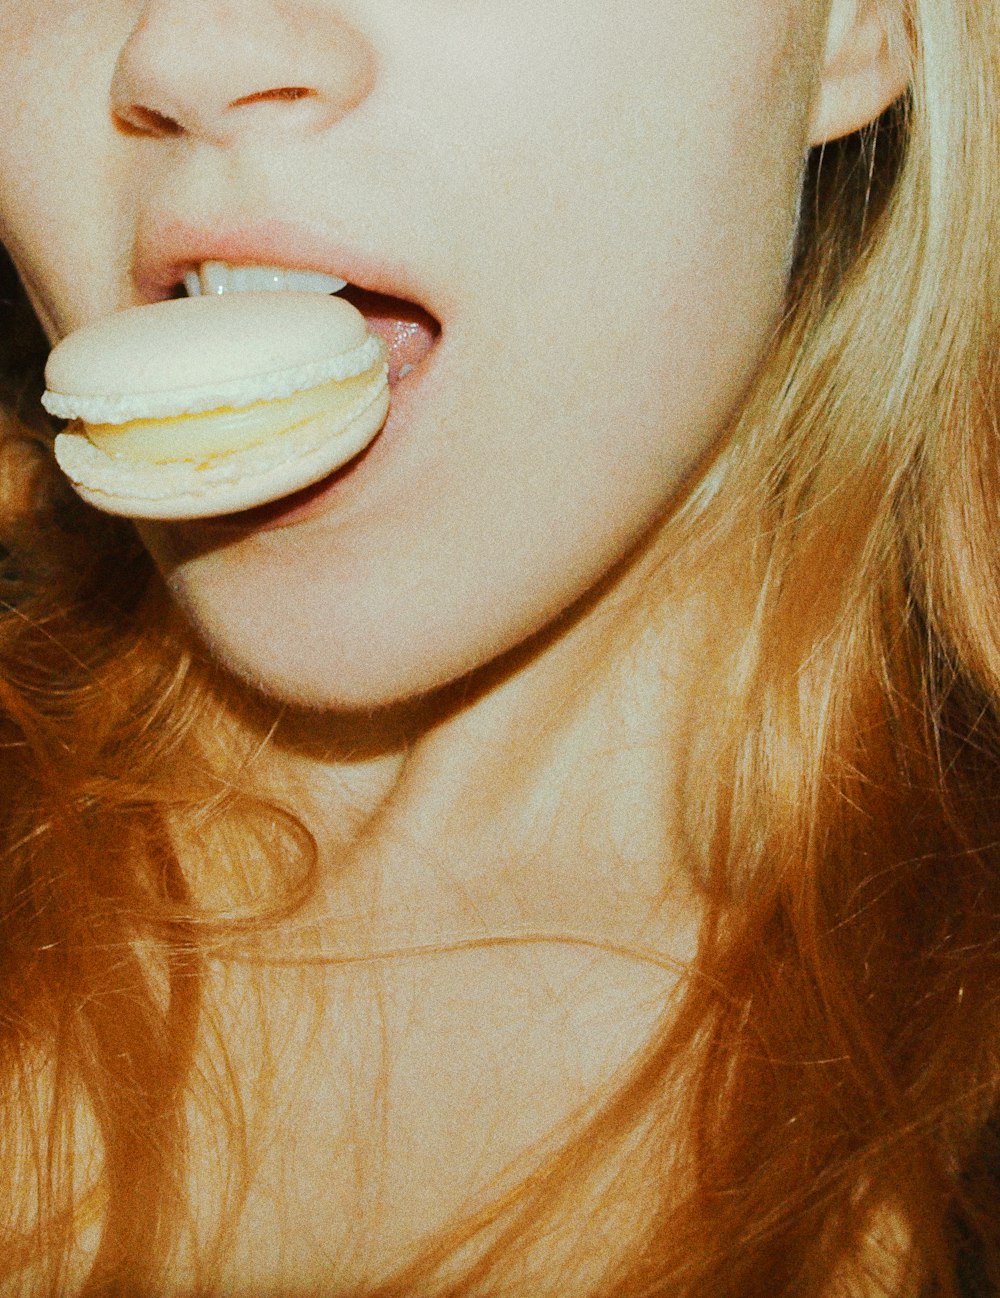 femme avec de la crème glacée blanche sur la bouche